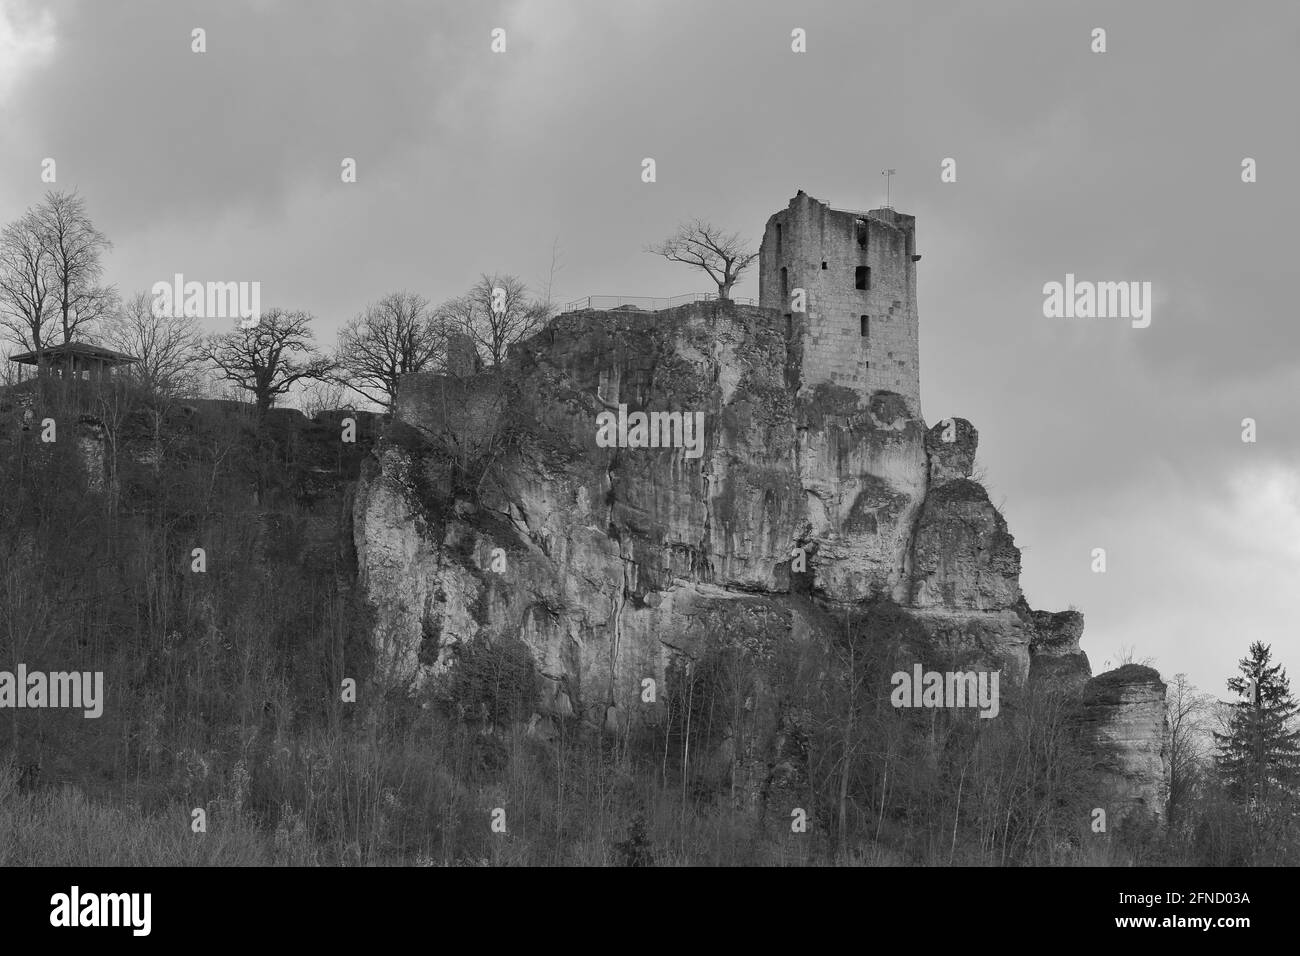 scenografica fotografia monocromatica di un castello medievale in rovina Foto Stock